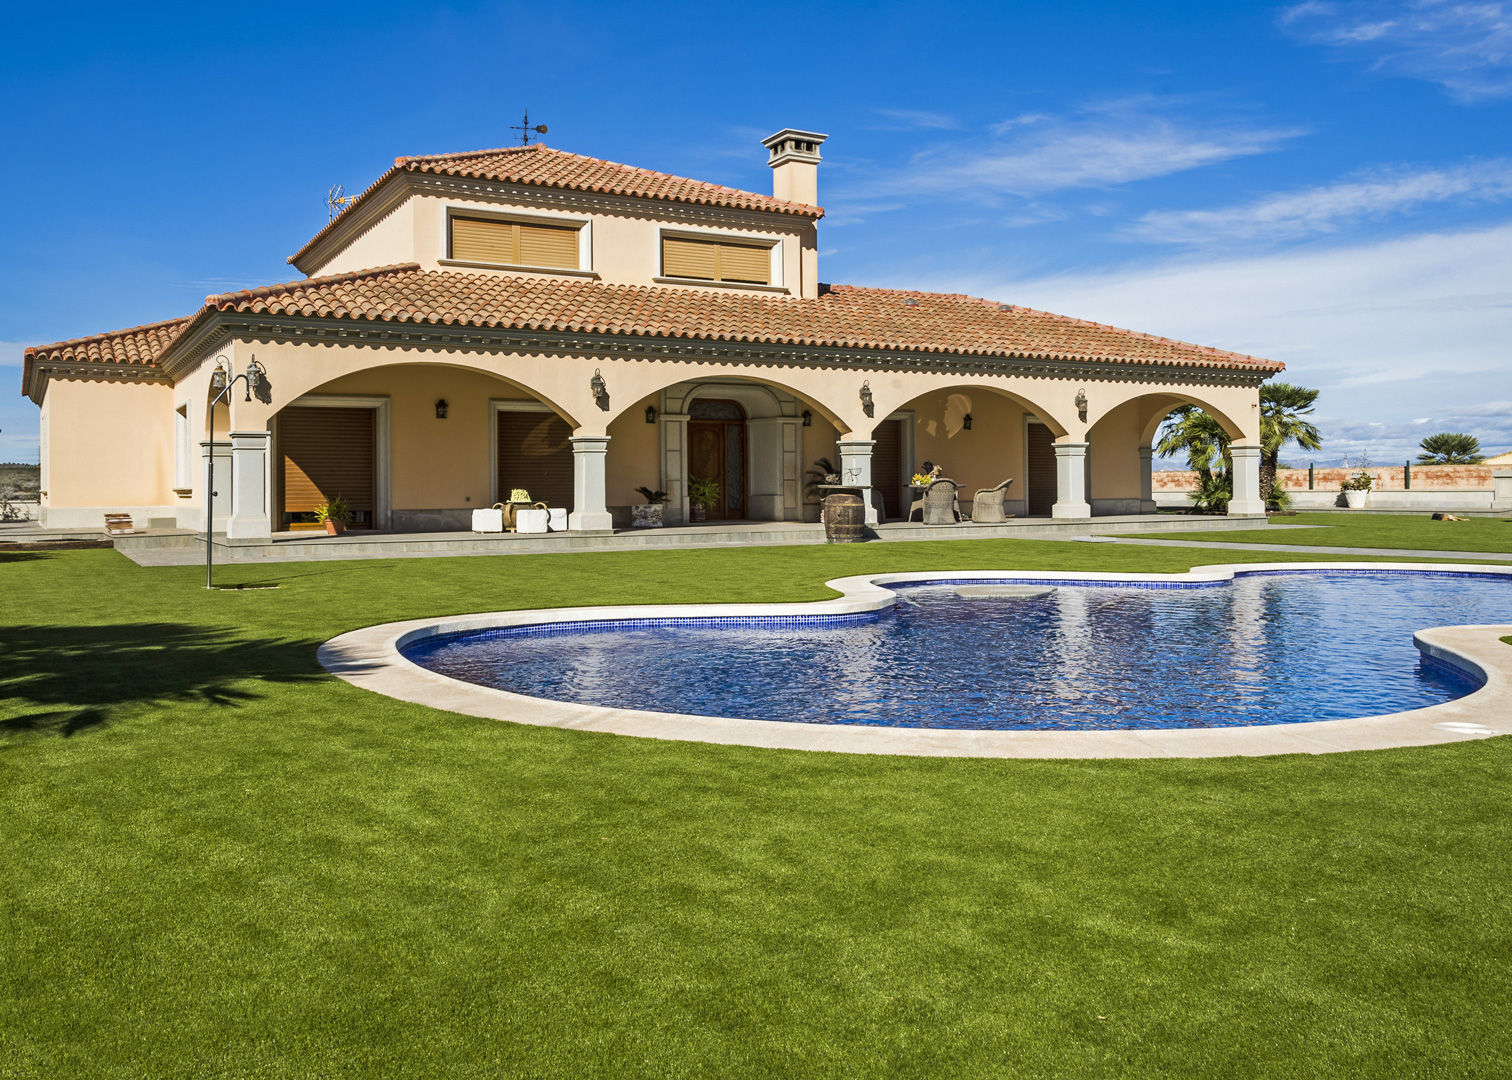 Césped artificial para jardín con piscina en San Miguel de Salinas, Alicante, Césped artificial Realturf Césped artificial Realturf Jardines en la fachada